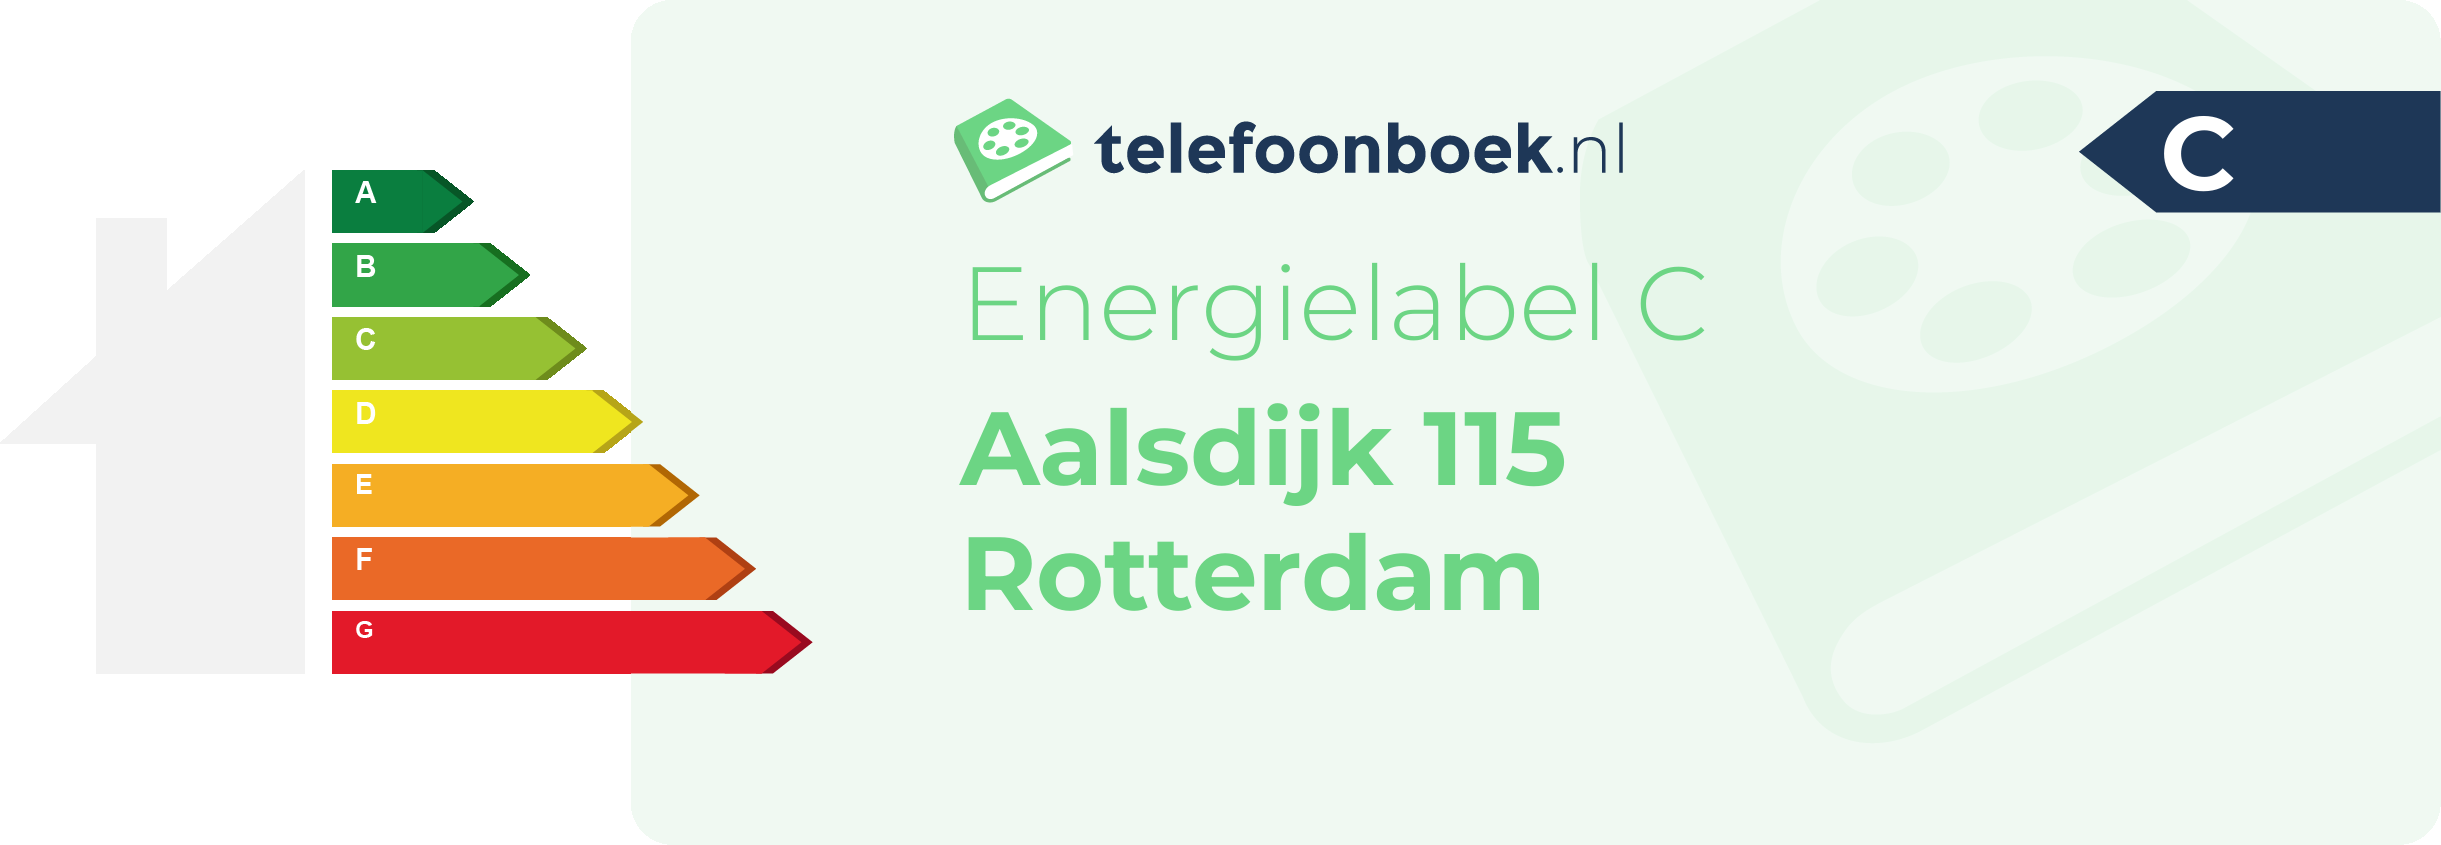 Energielabel Aalsdijk 115 Rotterdam